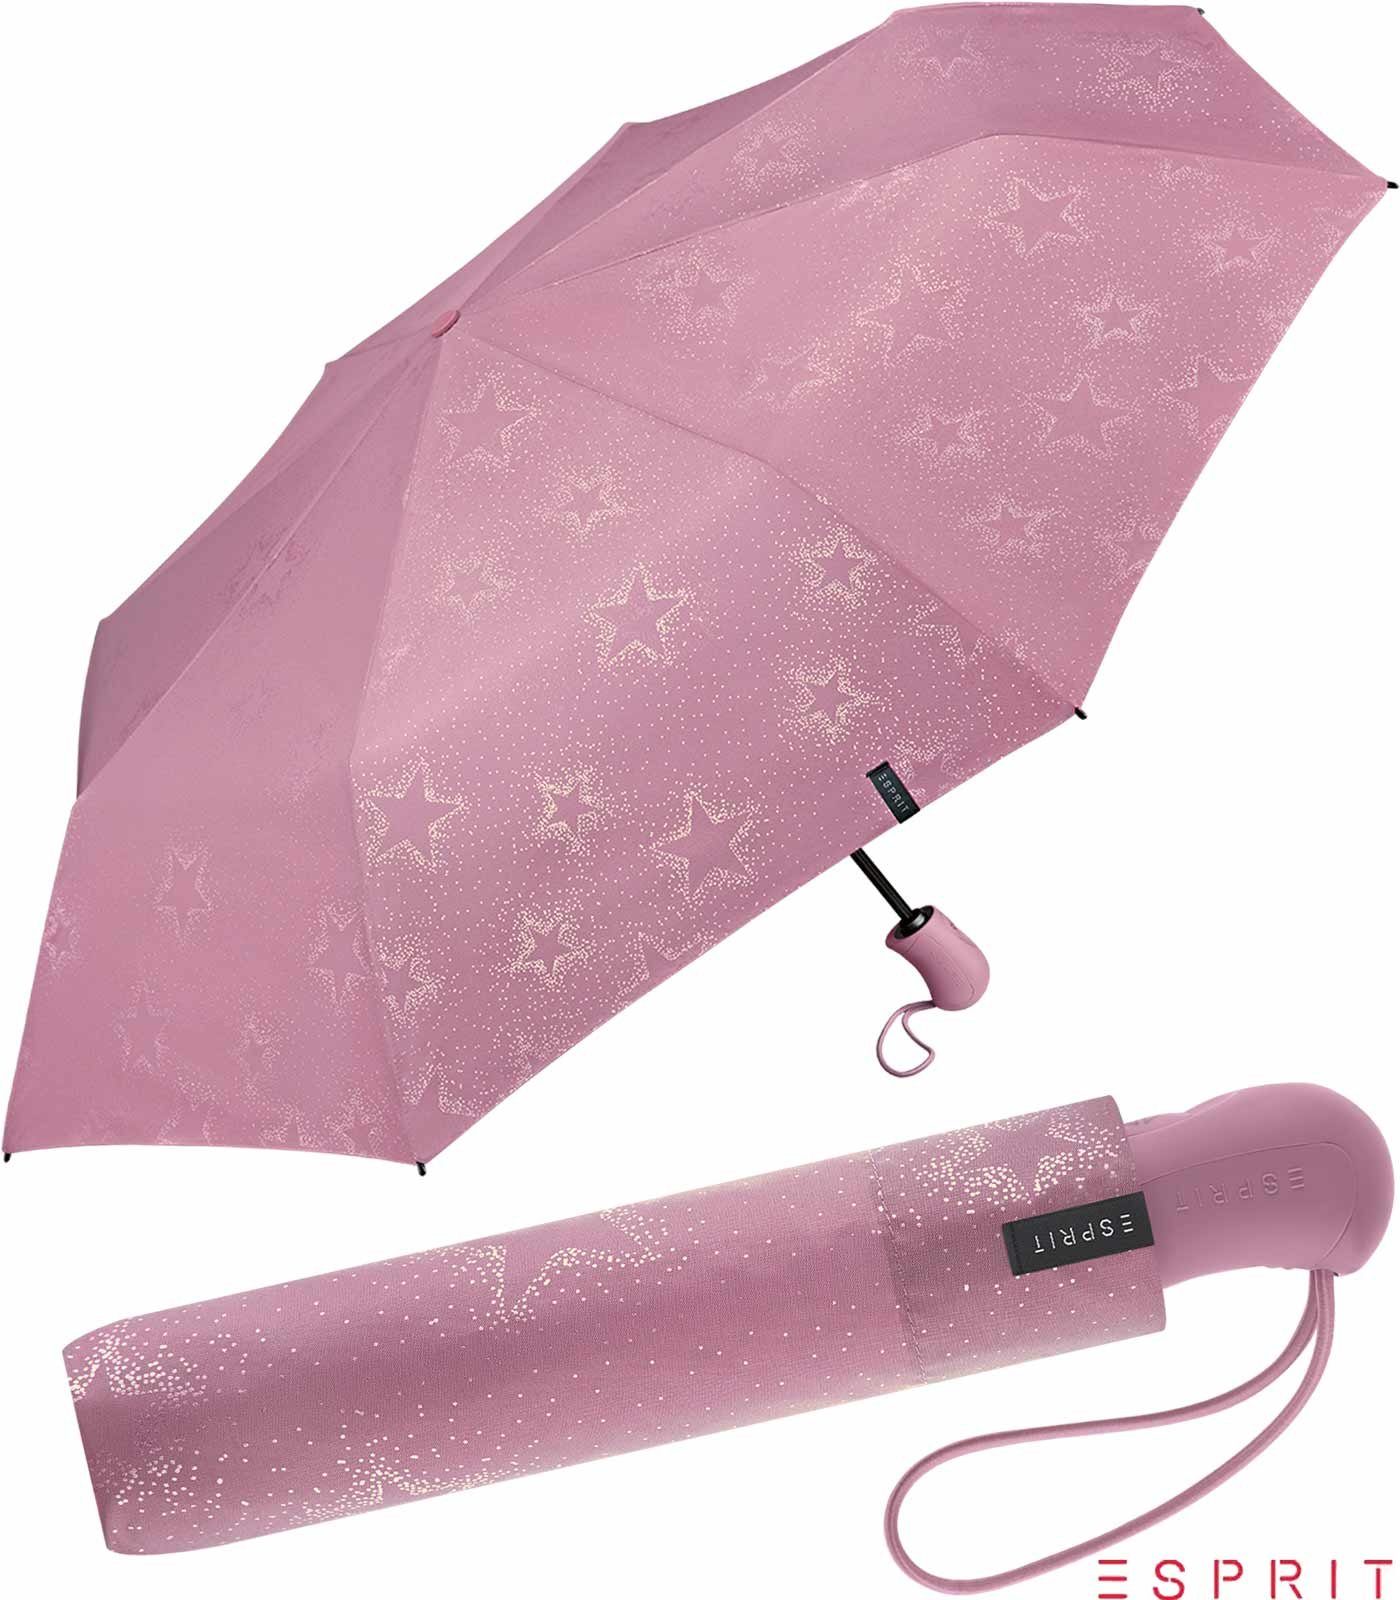 Esprit Taschenregenschirm Damen Easymatic Light Auf-Zu Automatik Starburst  - dusky orchid metall, stabil, praktisch, mit verspieltem Sternenmuster